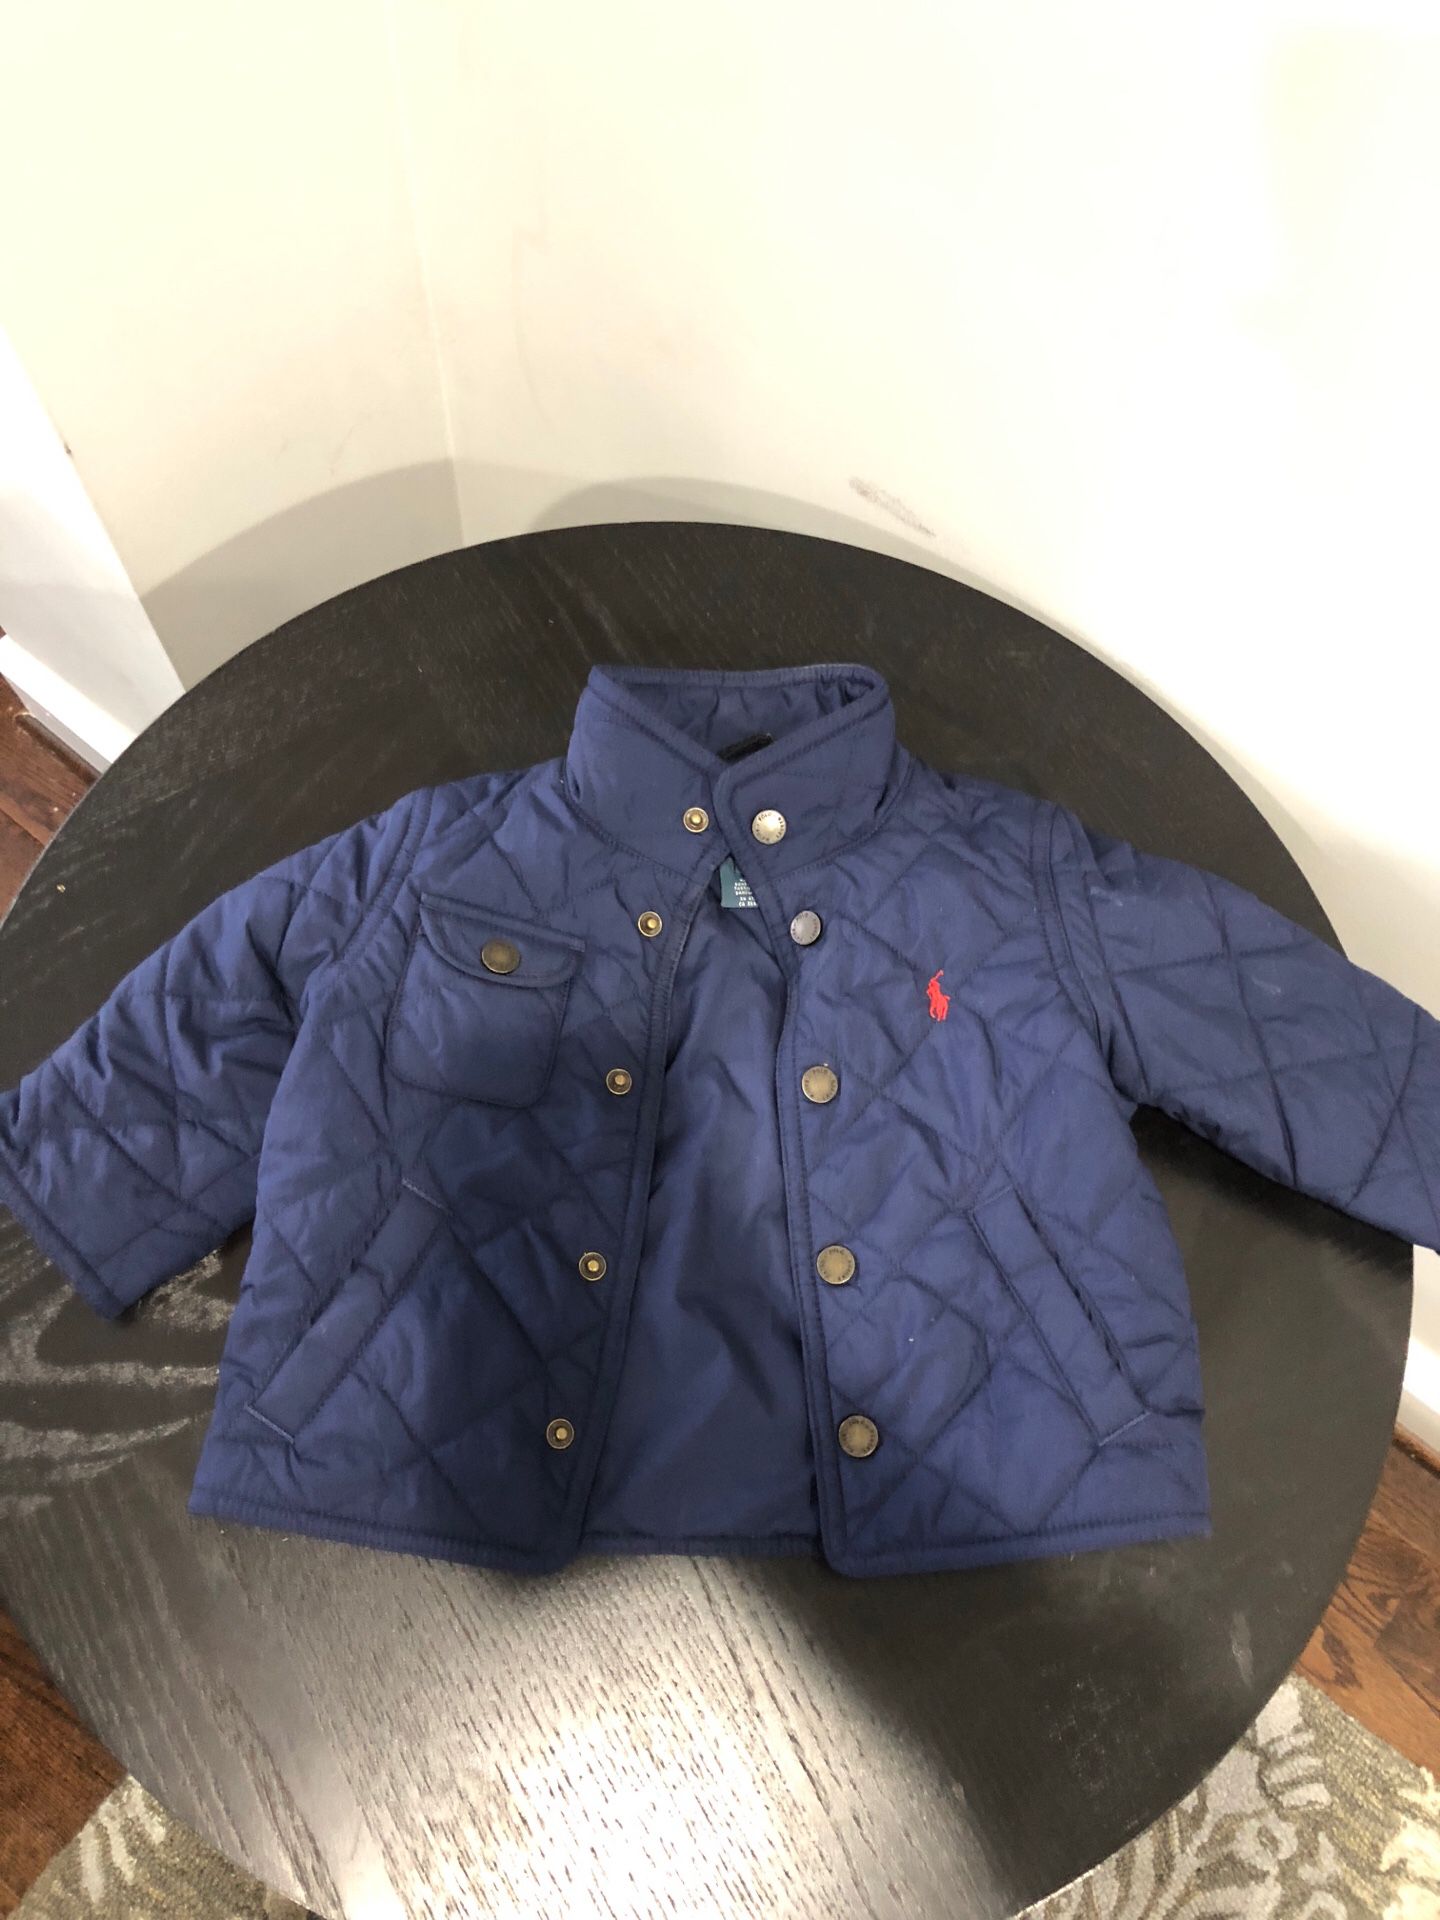 Ralph Lauren baby’s jacket navy blue